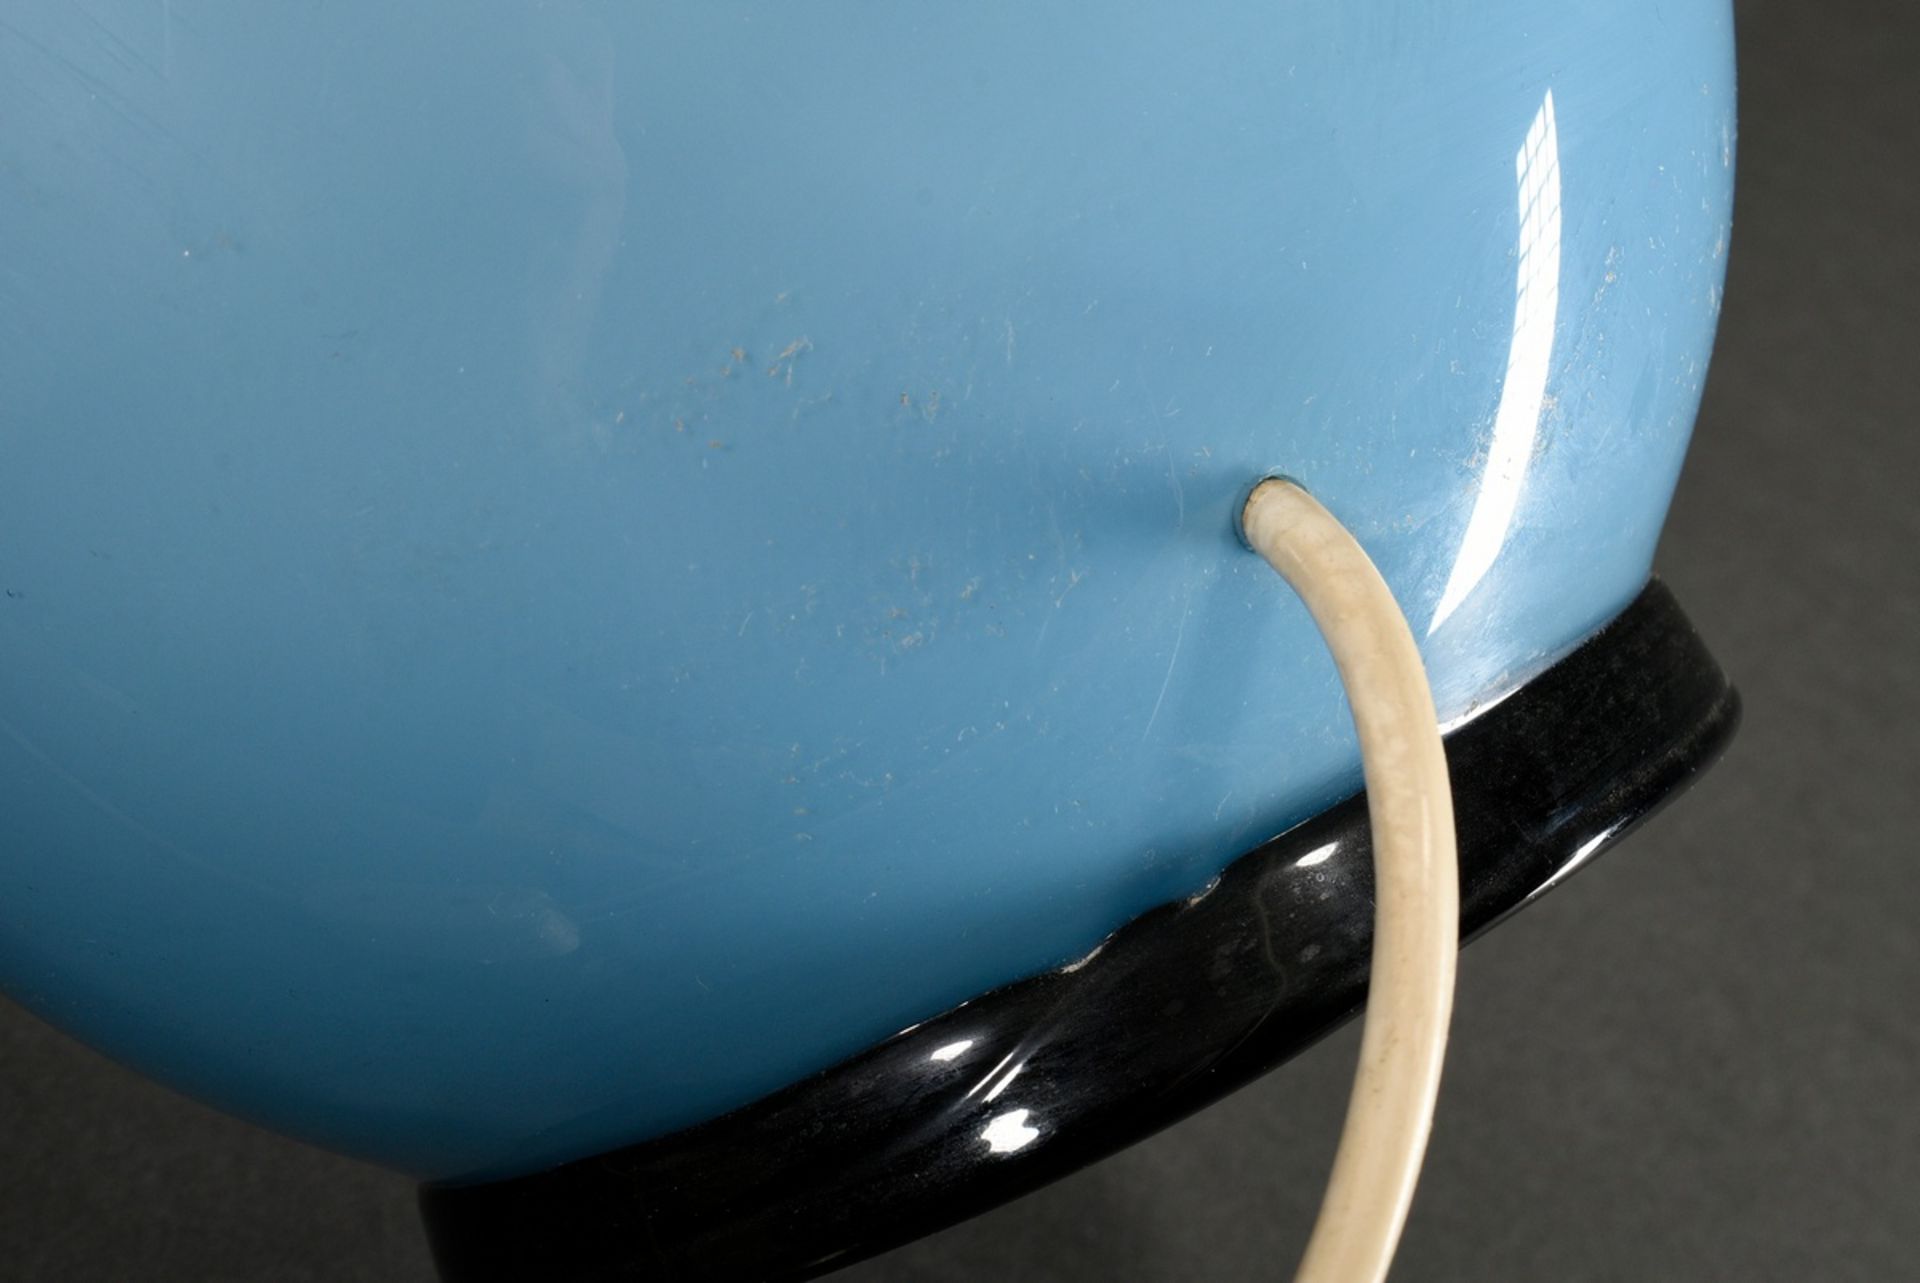 Venini Tischlampe mit ovoidem Glasfuß in hellblau-opakem Glas auf schwarzen Standring, alter Kleber - Bild 6 aus 7